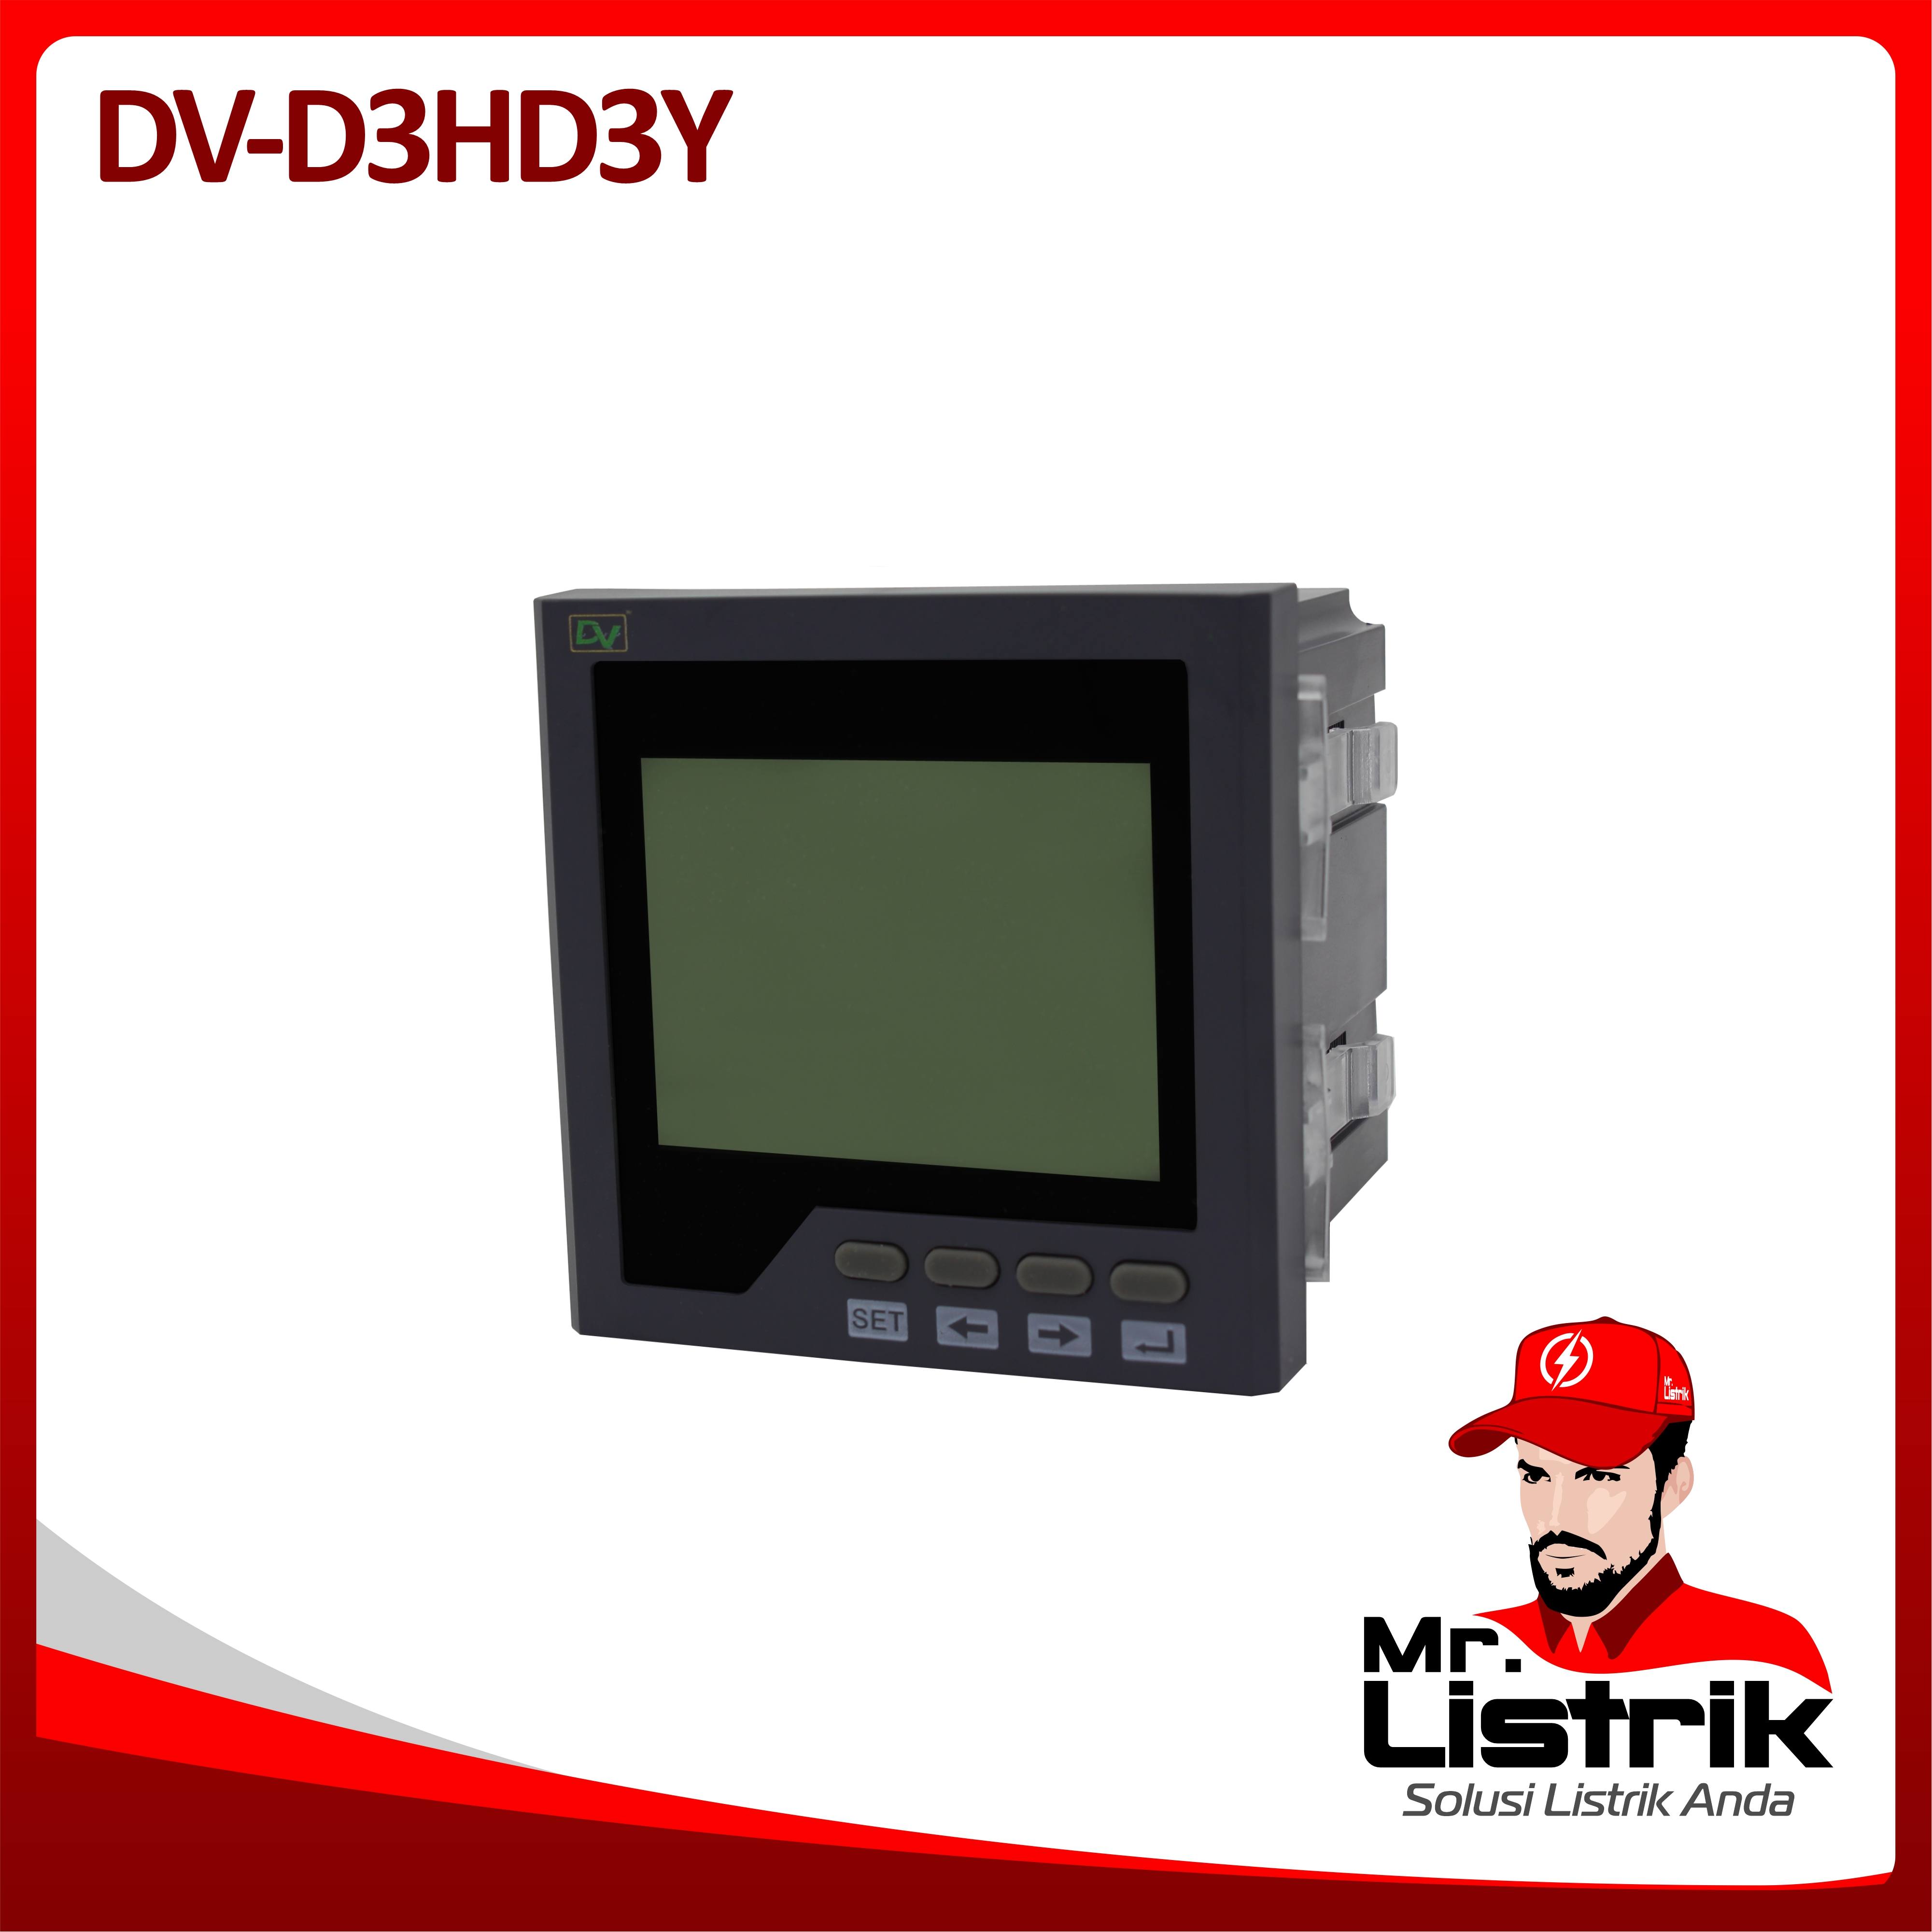 Digital Multimeter 3P + Harmonic LCD Display DV / D3HD3Y